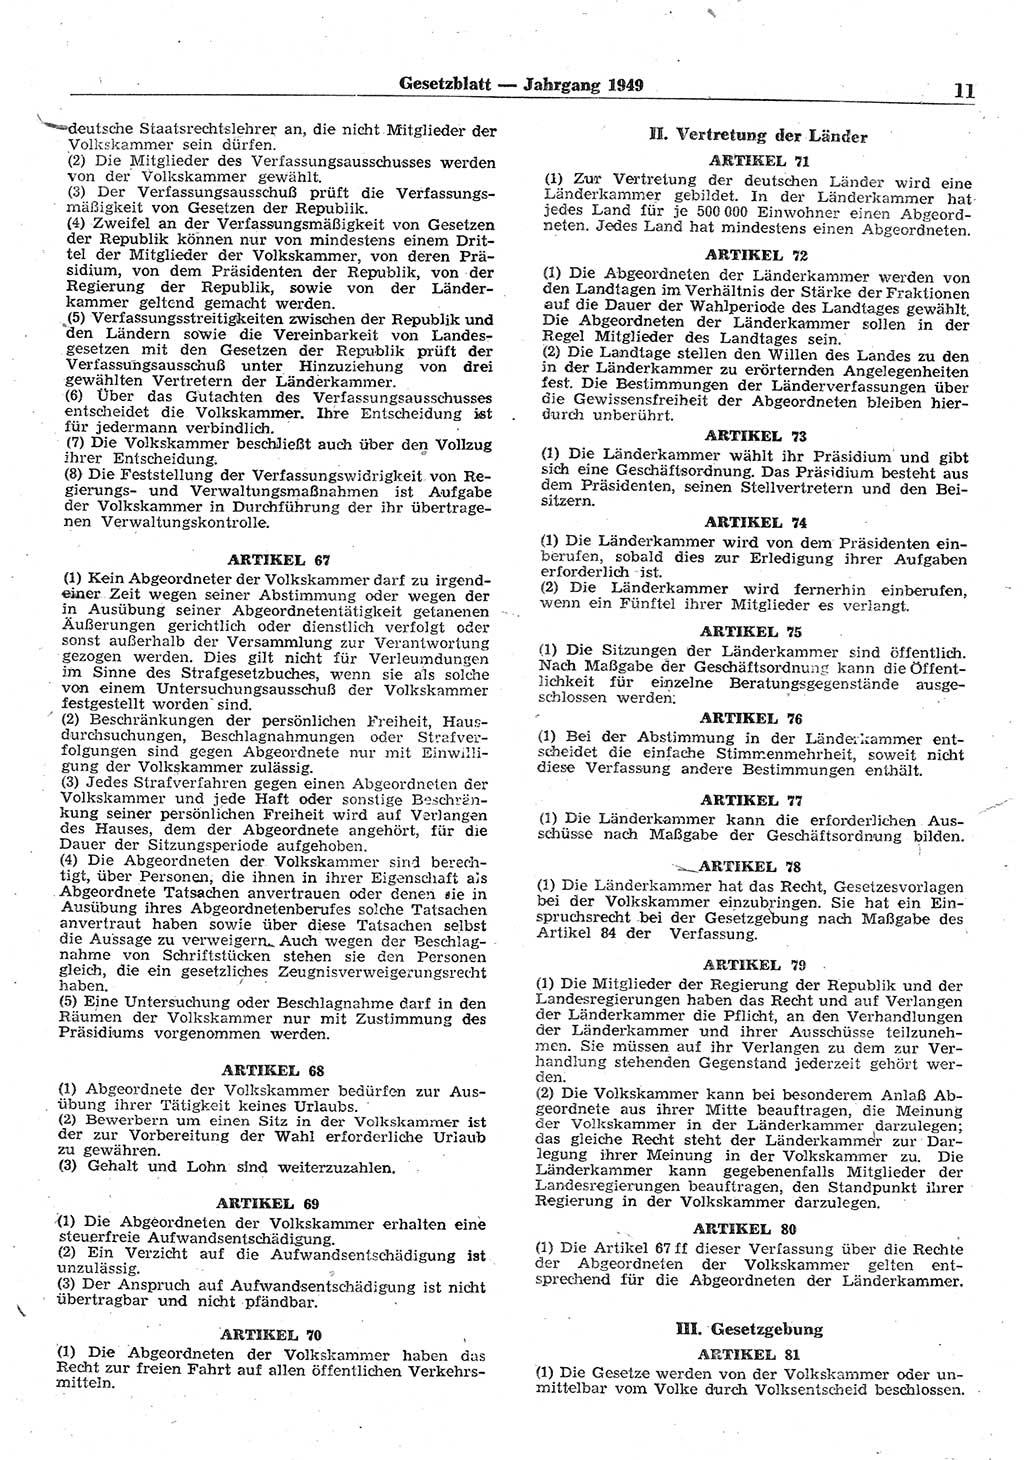 Gesetzblatt (GBl.) der Deutschen Demokratischen Republik (DDR) 1949, Seite 11 (GBl. DDR 1949, S. 11)